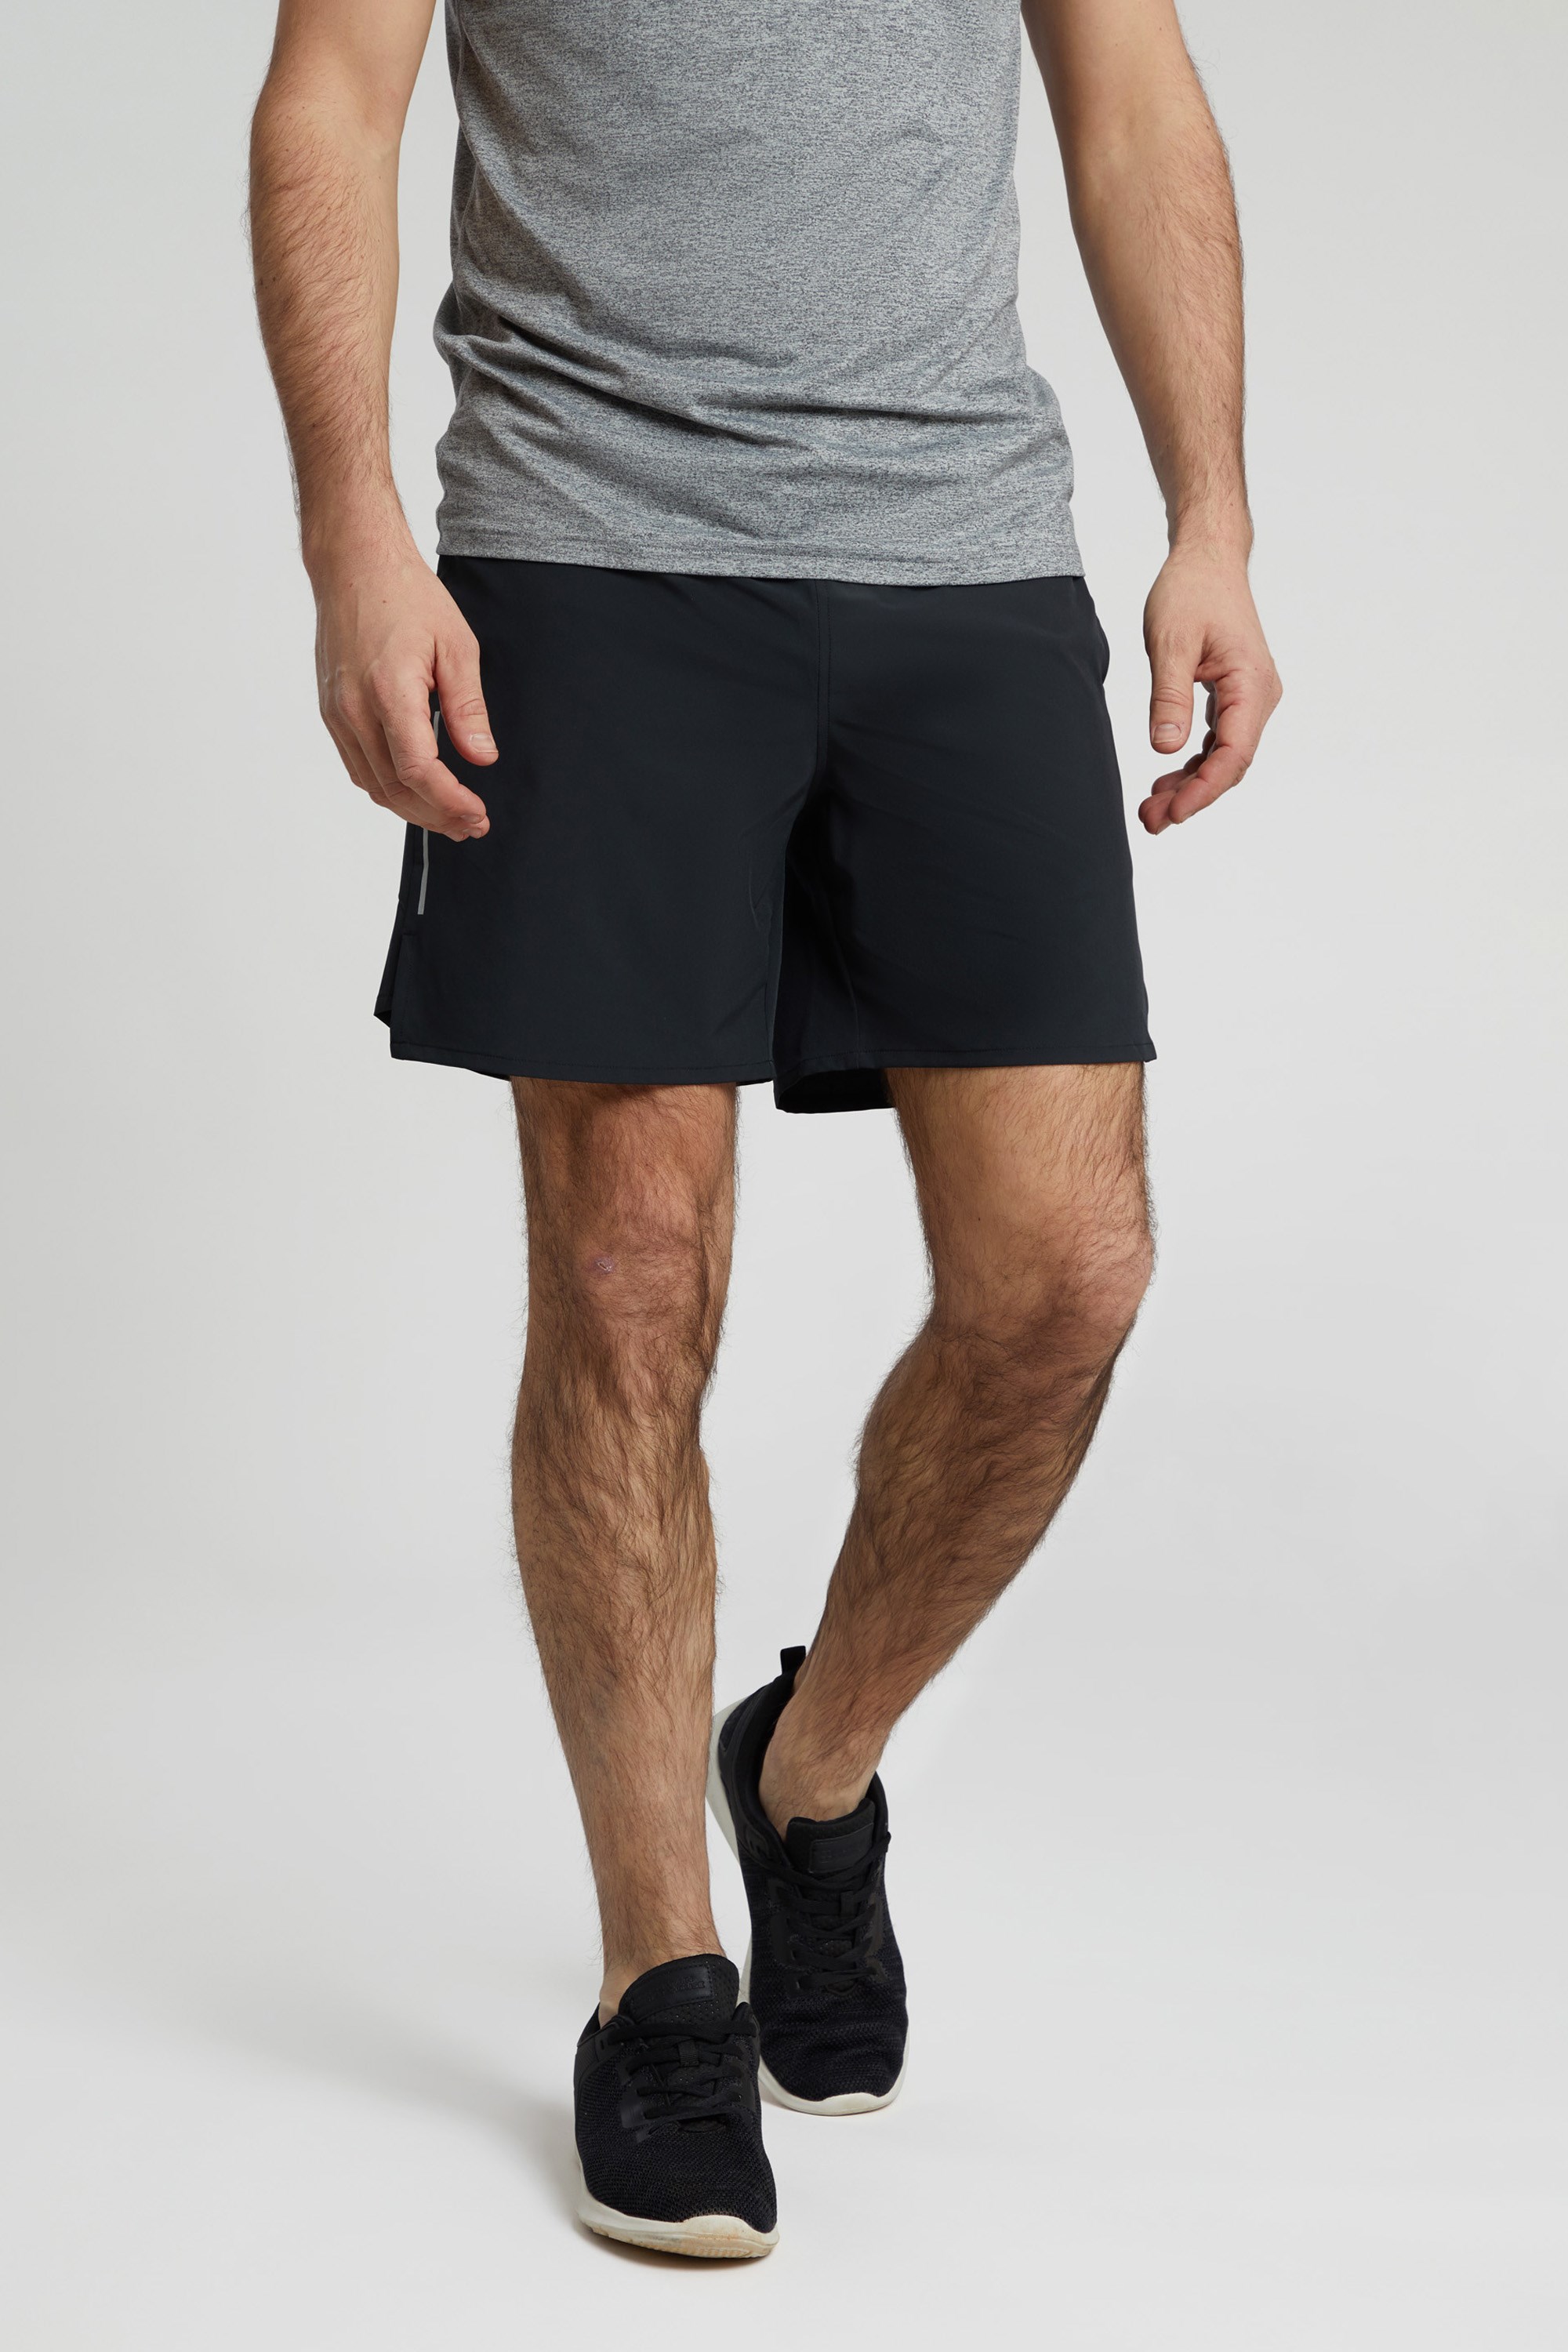 Men's Lacoste Cotton Flannel Jogger Shorts - Men's Shorts & Swim